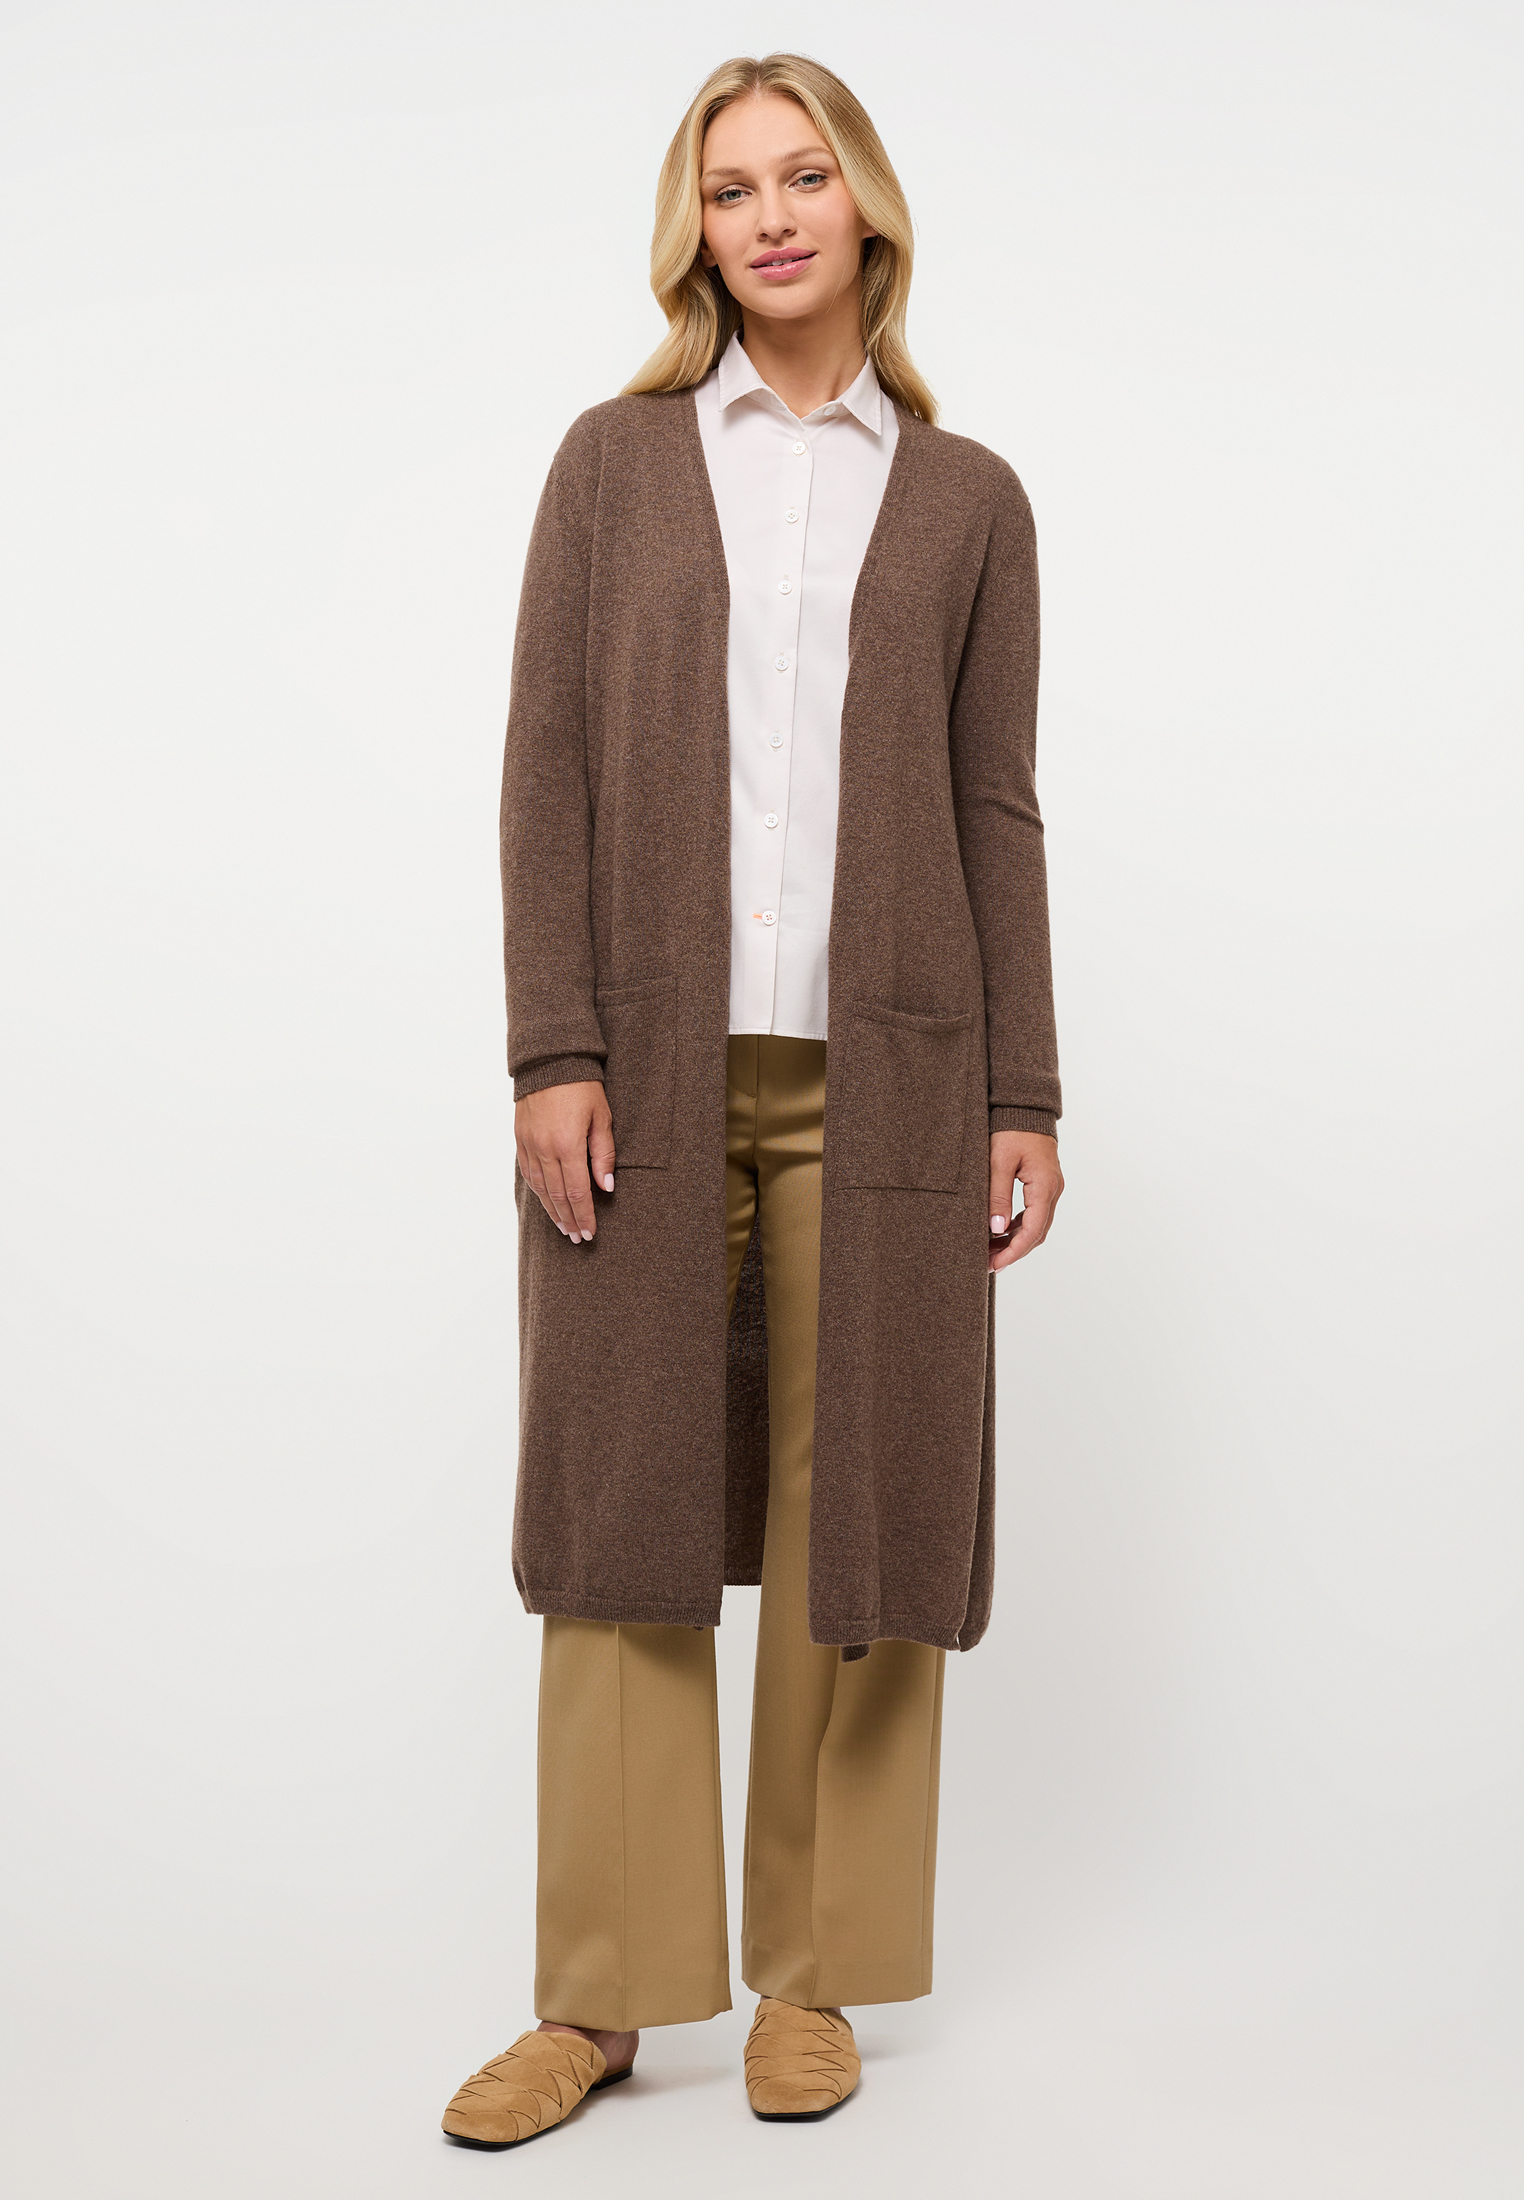 Knitted cardigan in brown | | dark dark 2KN00093-02-92-2XL brown 2XL | plain